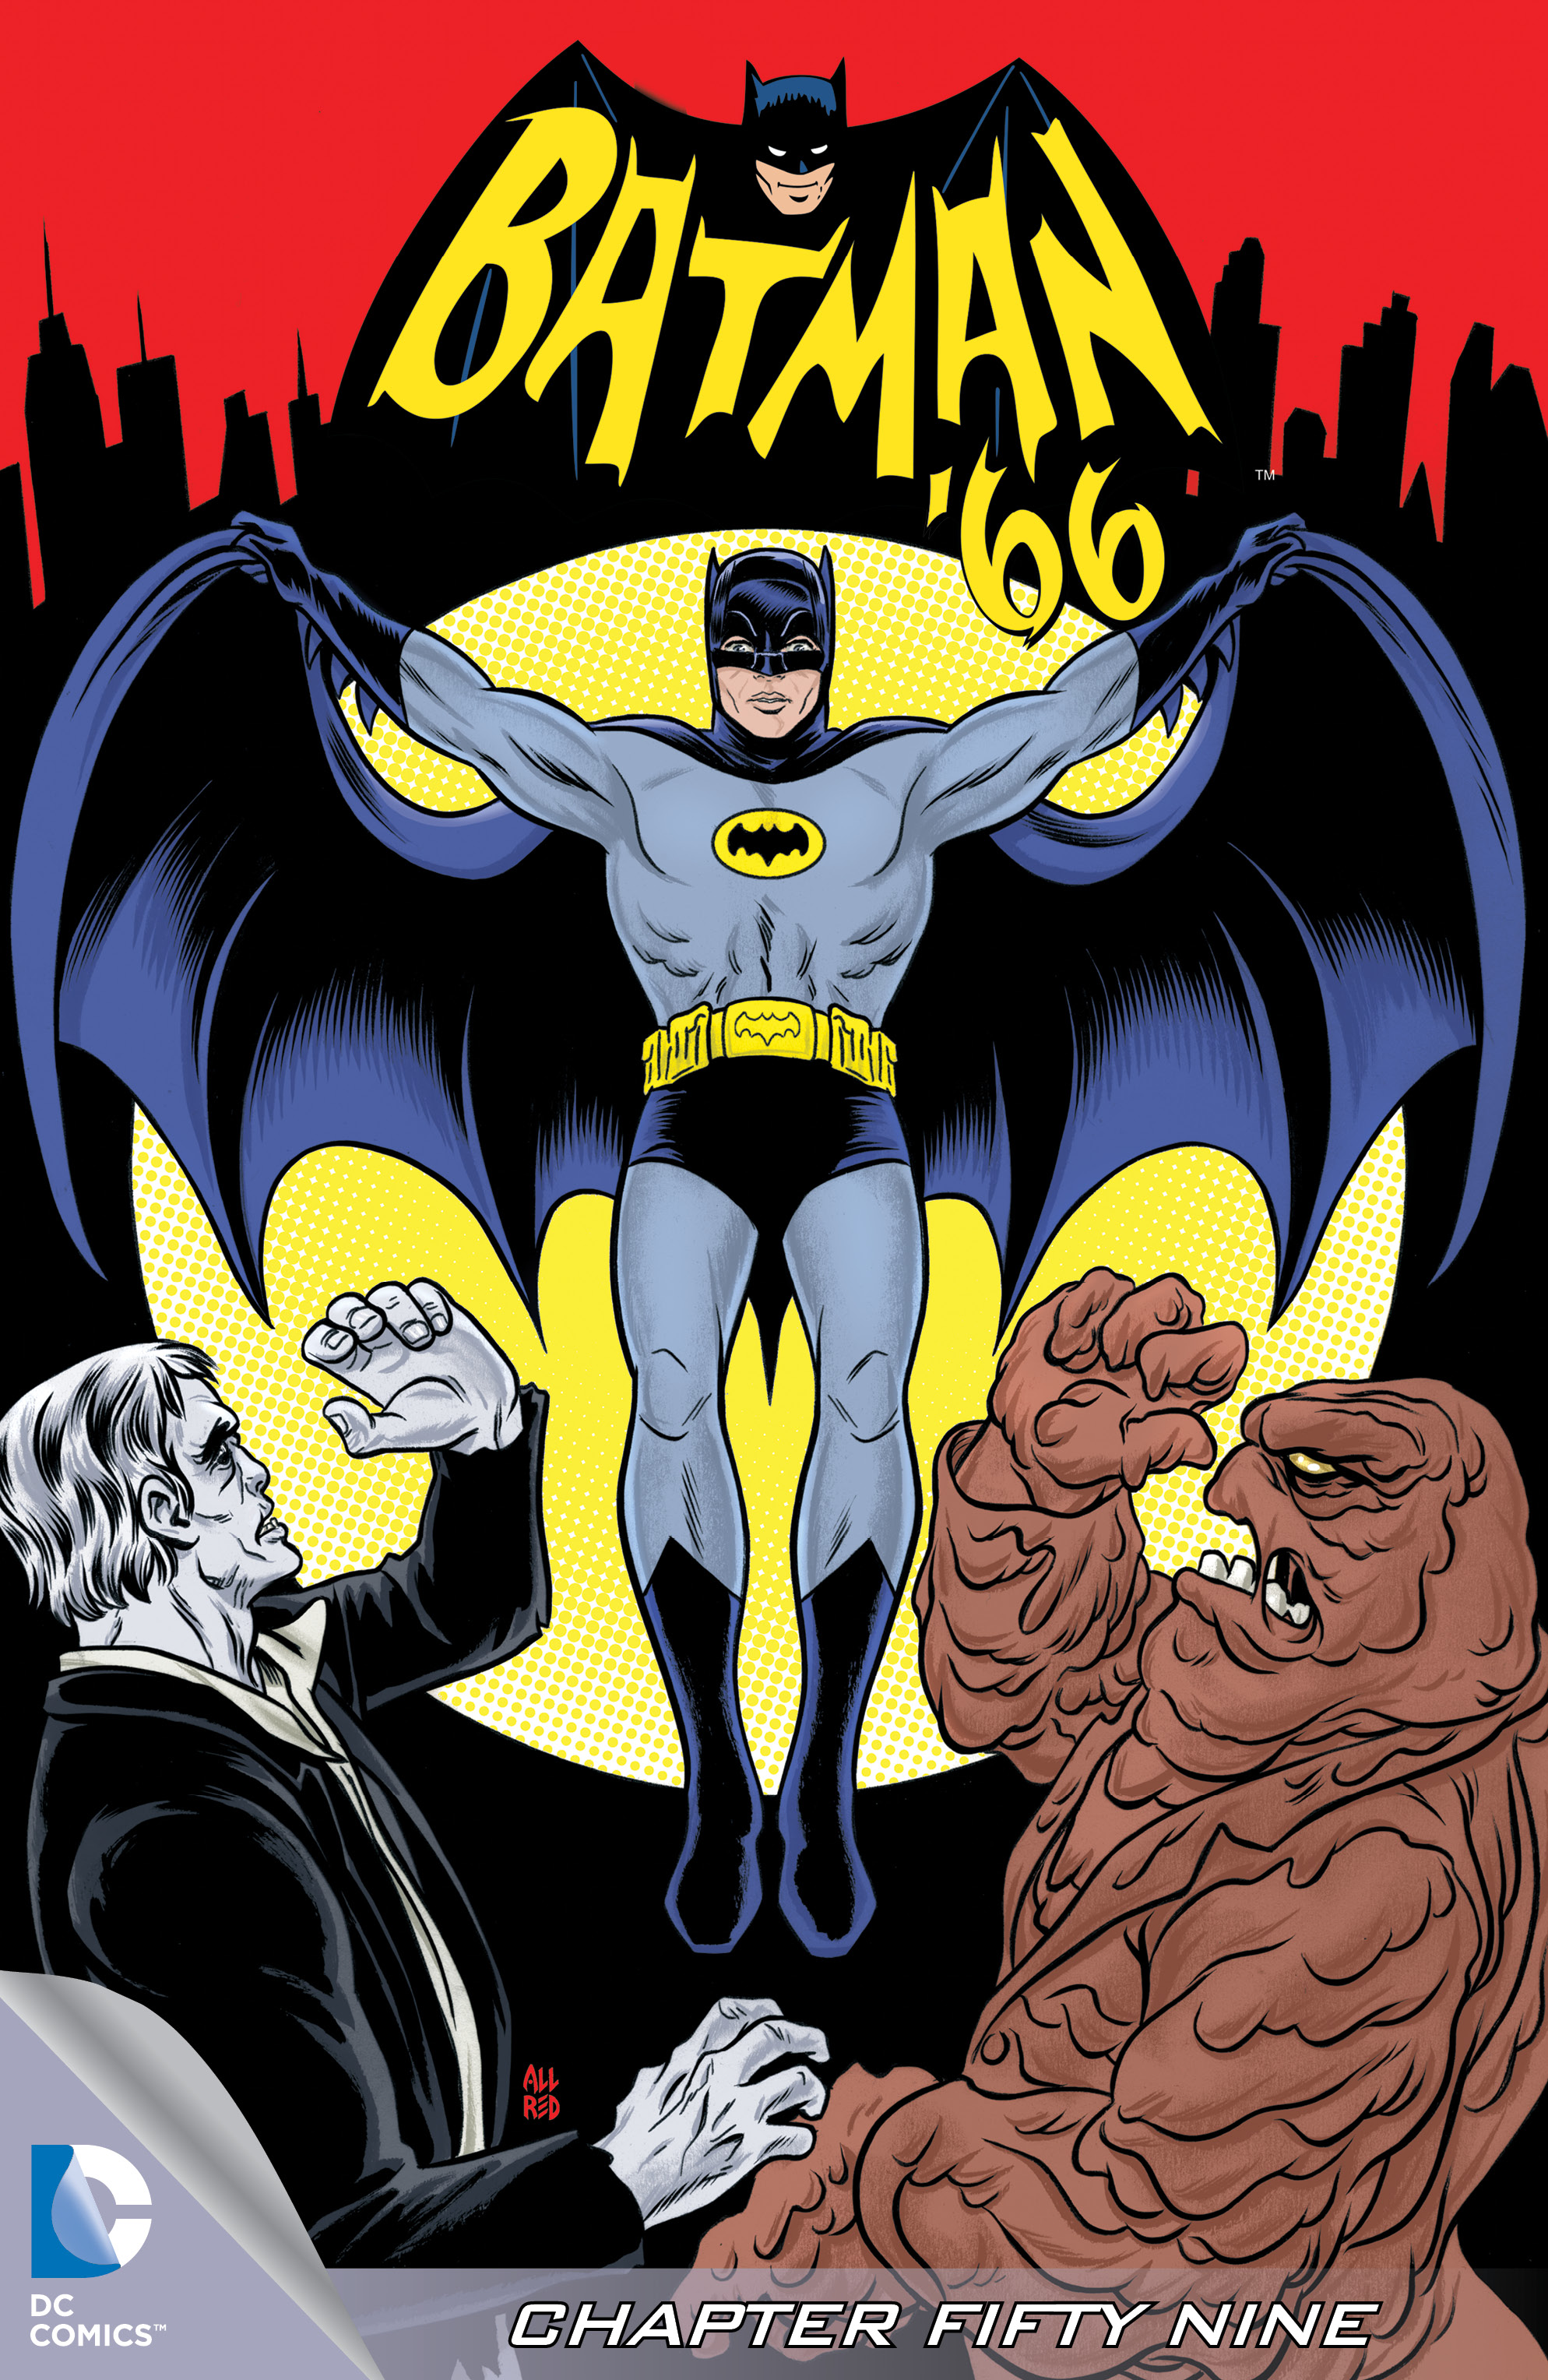 Batman '66 #59 preview images